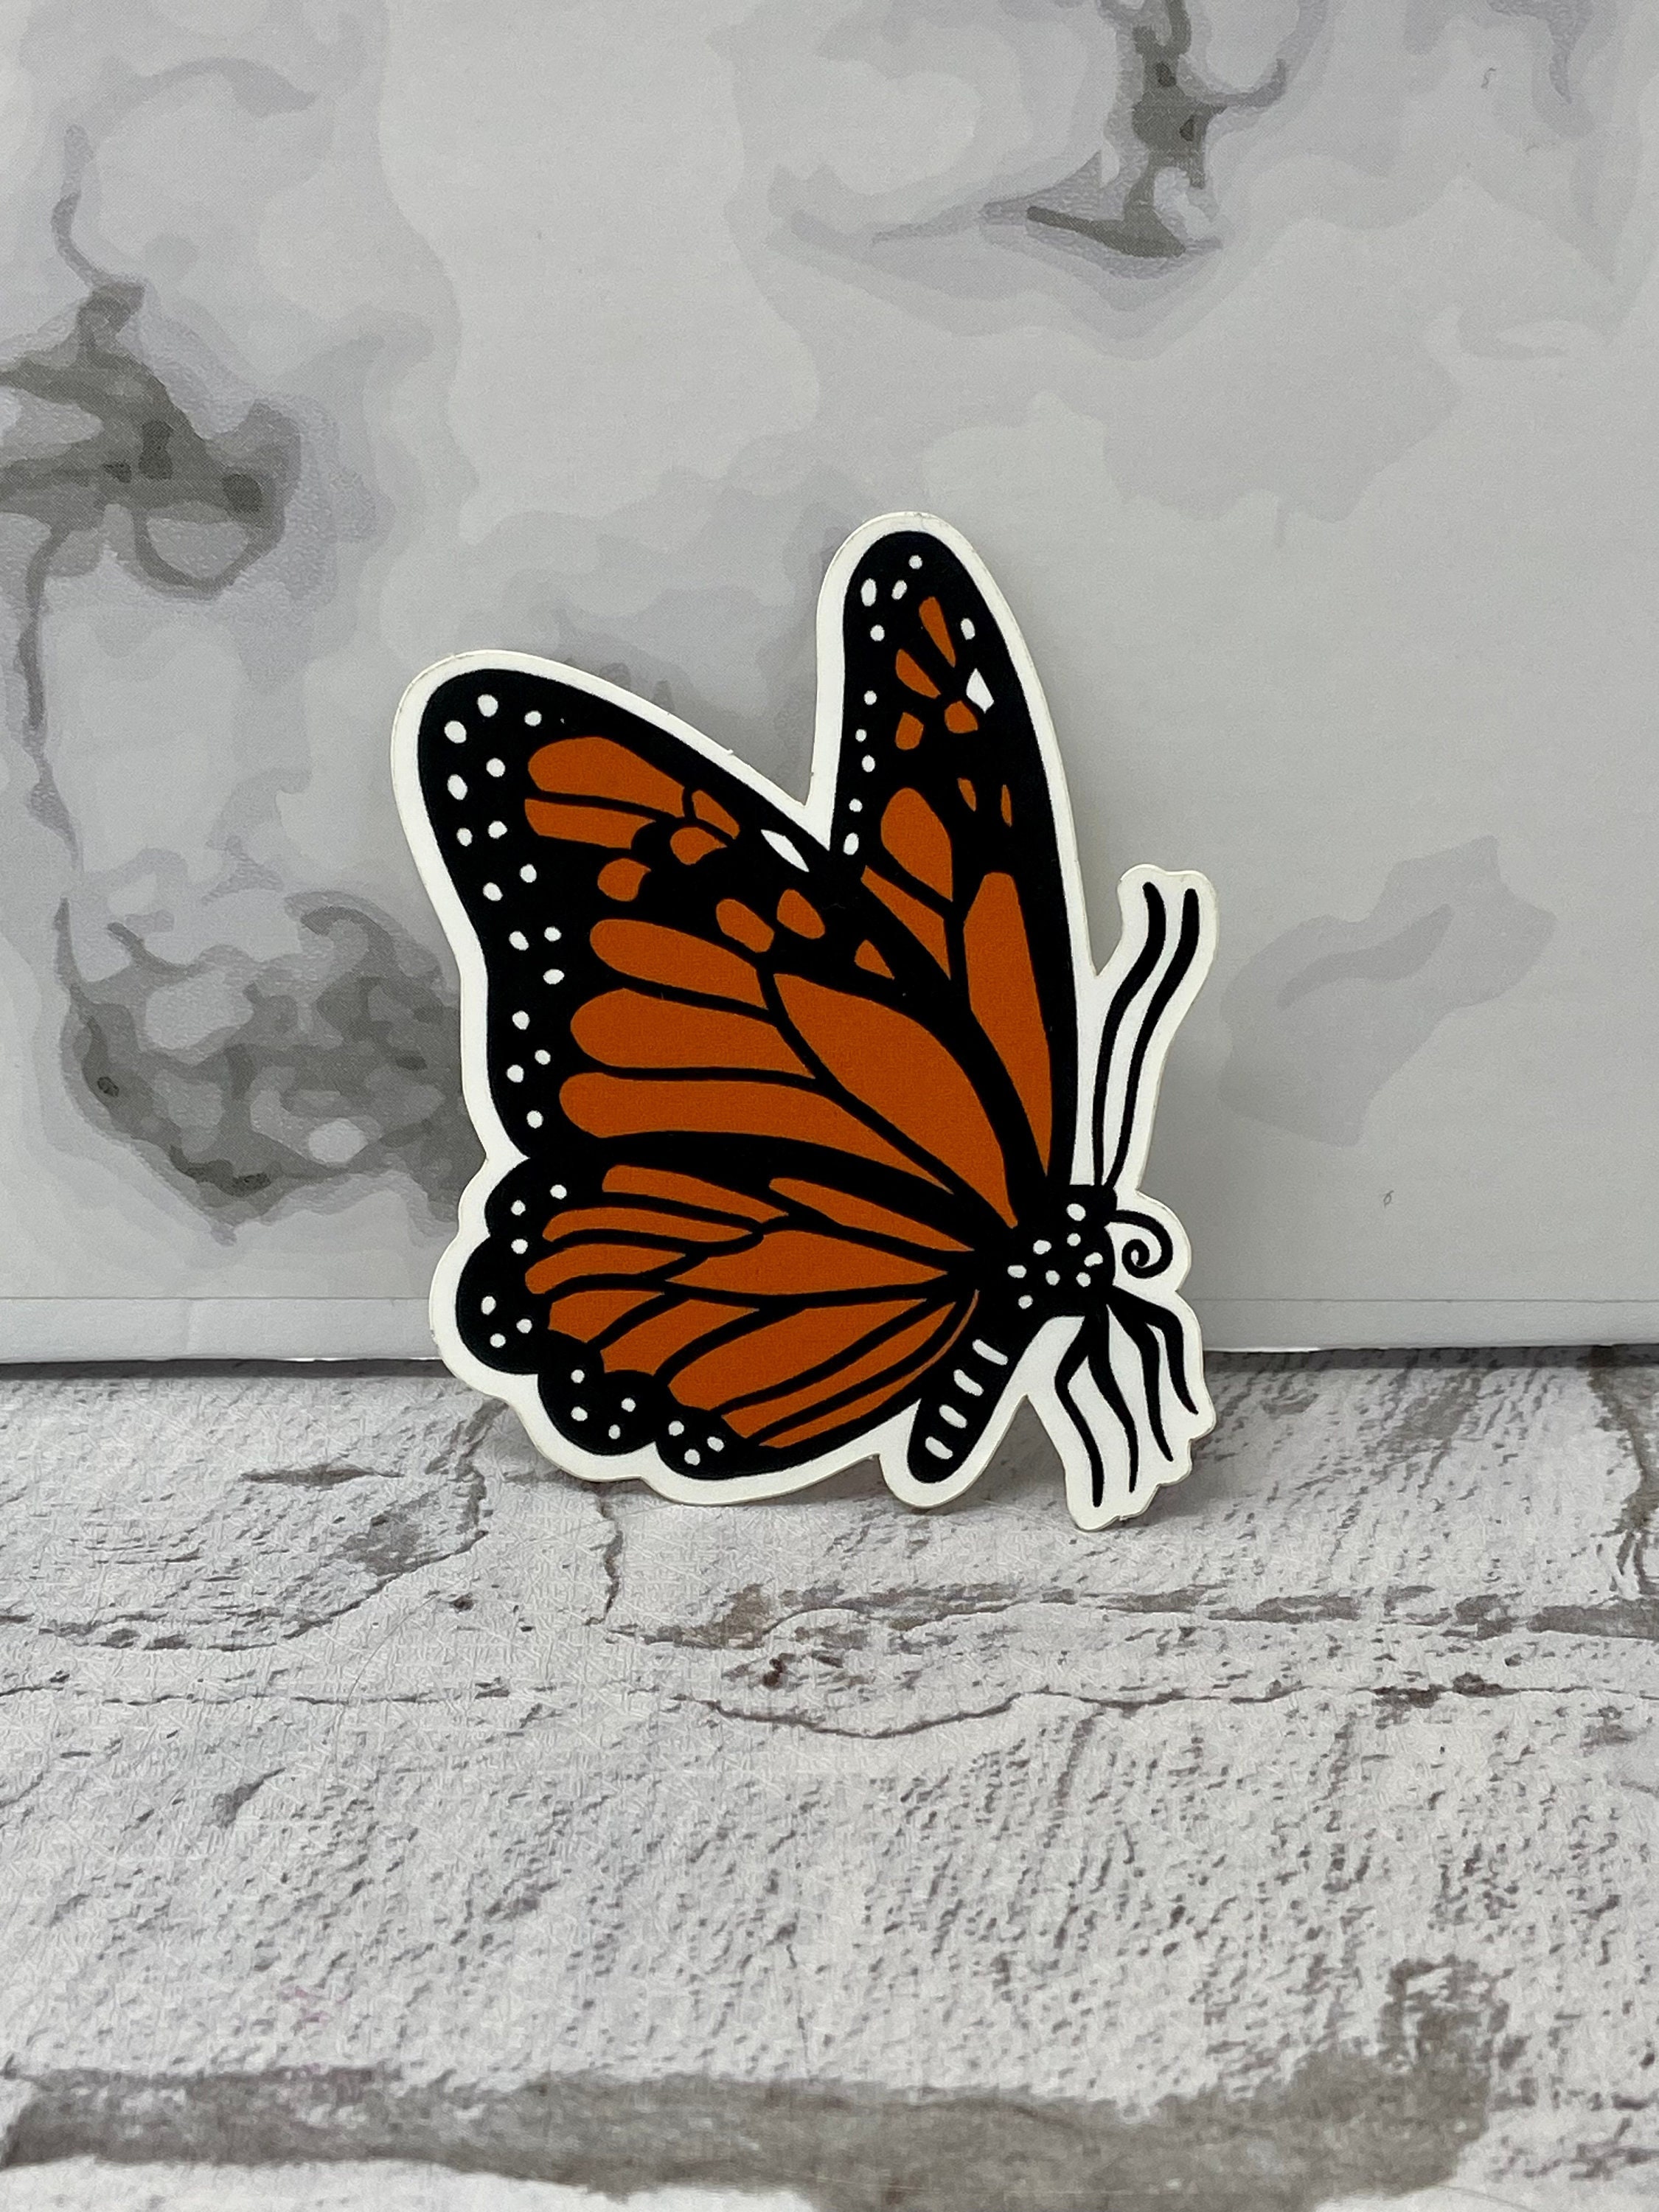 butterfly sticker waterproof – Hailey's Stickers